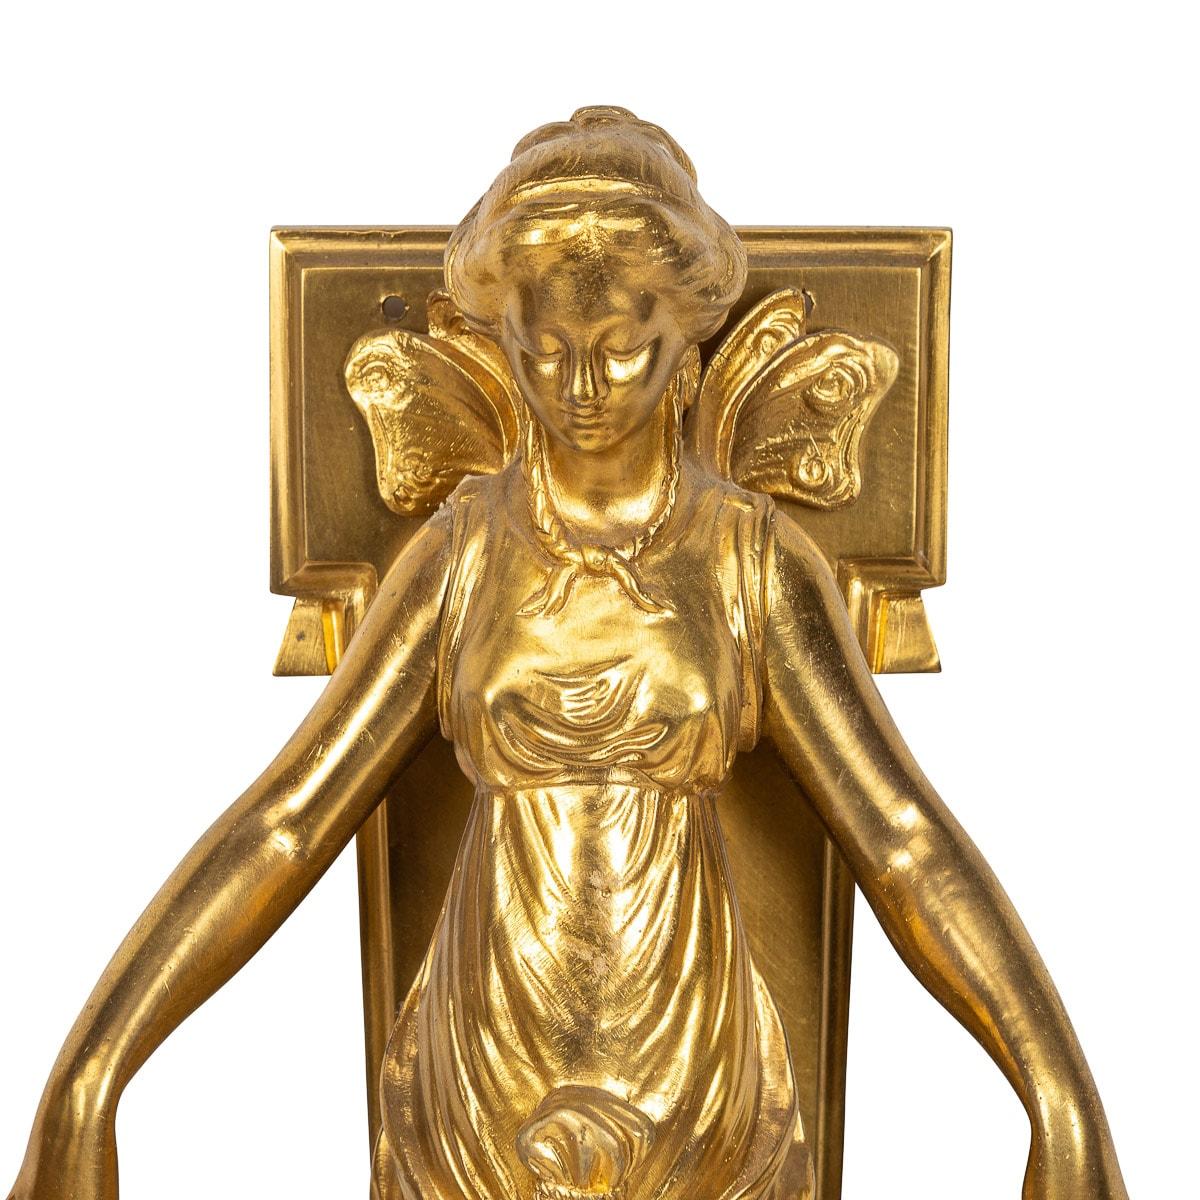 Ancienne paire d'appliques en bronze d'or du 19ème siècle. Cette paire de lampes est ornée d'une figure féminine magnifiquement modelée, portant une robe et des bras qui soutiennent les branches jumelles ornées de feuilles d'acanthe et de rinceaux